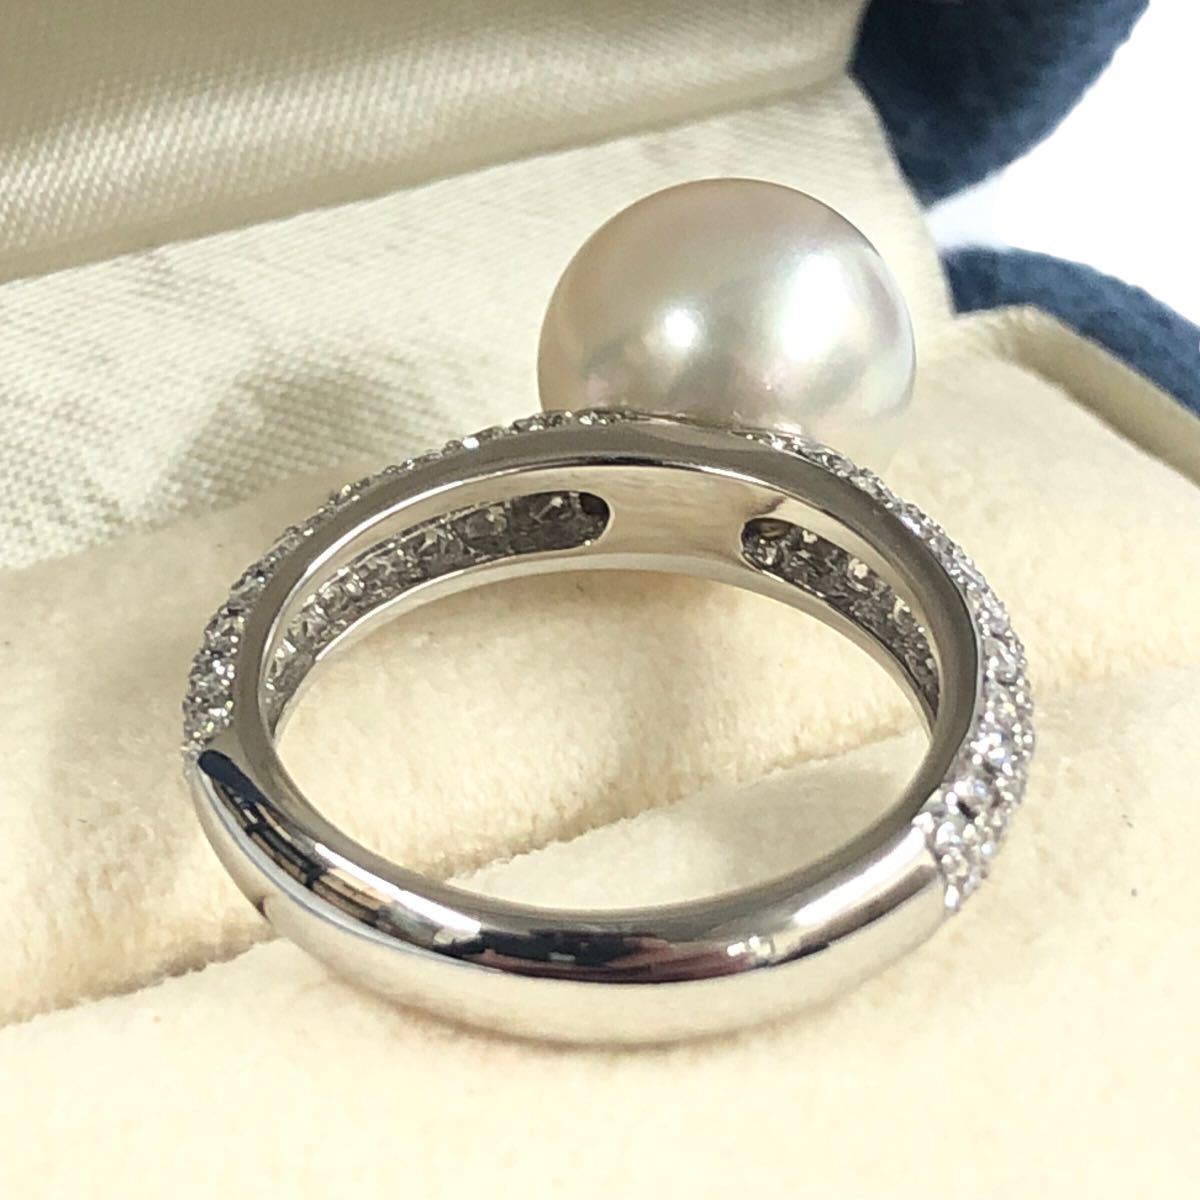  не использовался Mikimoto Akoya жемчуг жемчуг 10. diamond D0.80 Pt950 7.6g11.5 номер кольцо кольцо с коробкой хранение товар 